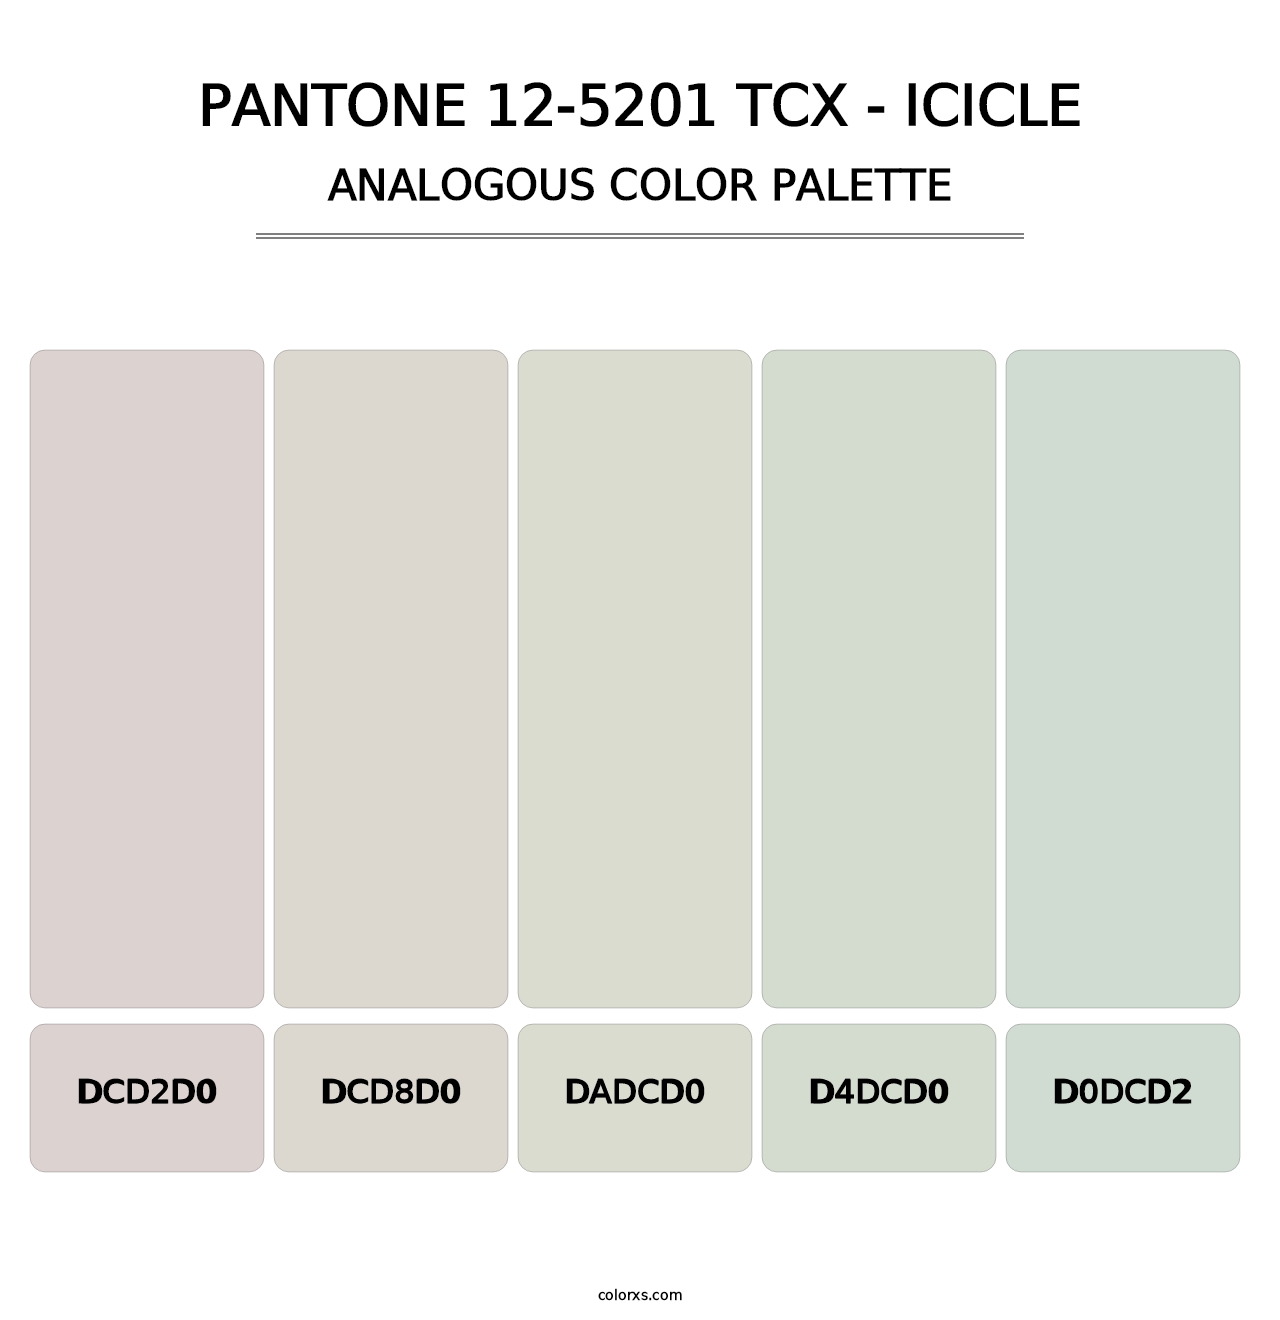 PANTONE 12-5201 TCX - Icicle - Analogous Color Palette